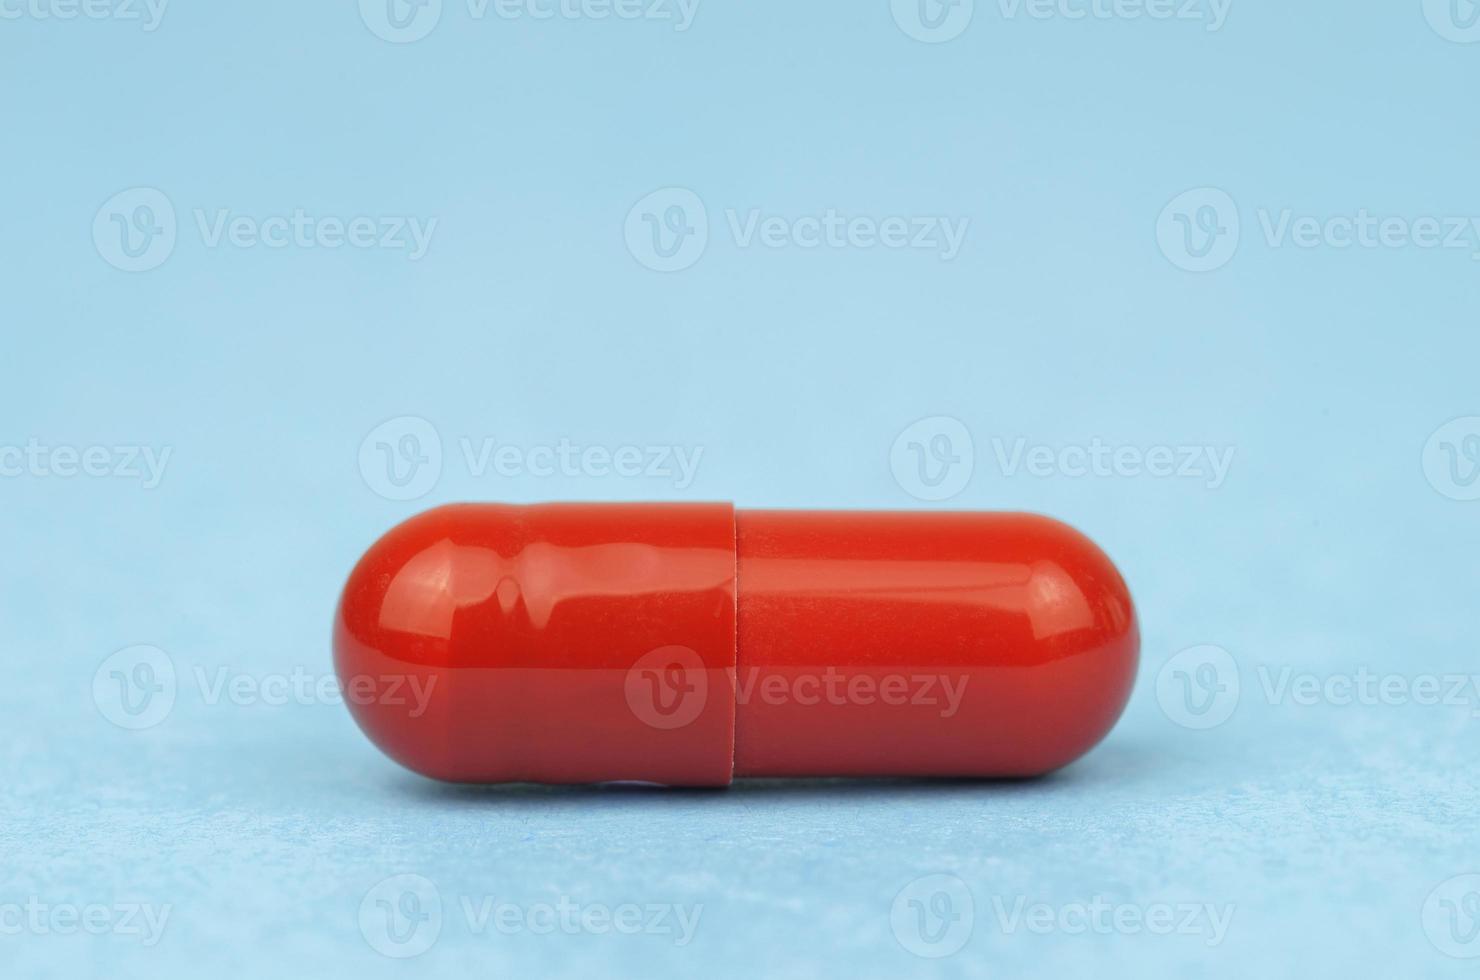 blandad farmaceutisk medicin biljard, tabletter och kapslar över blå bakgrund foto